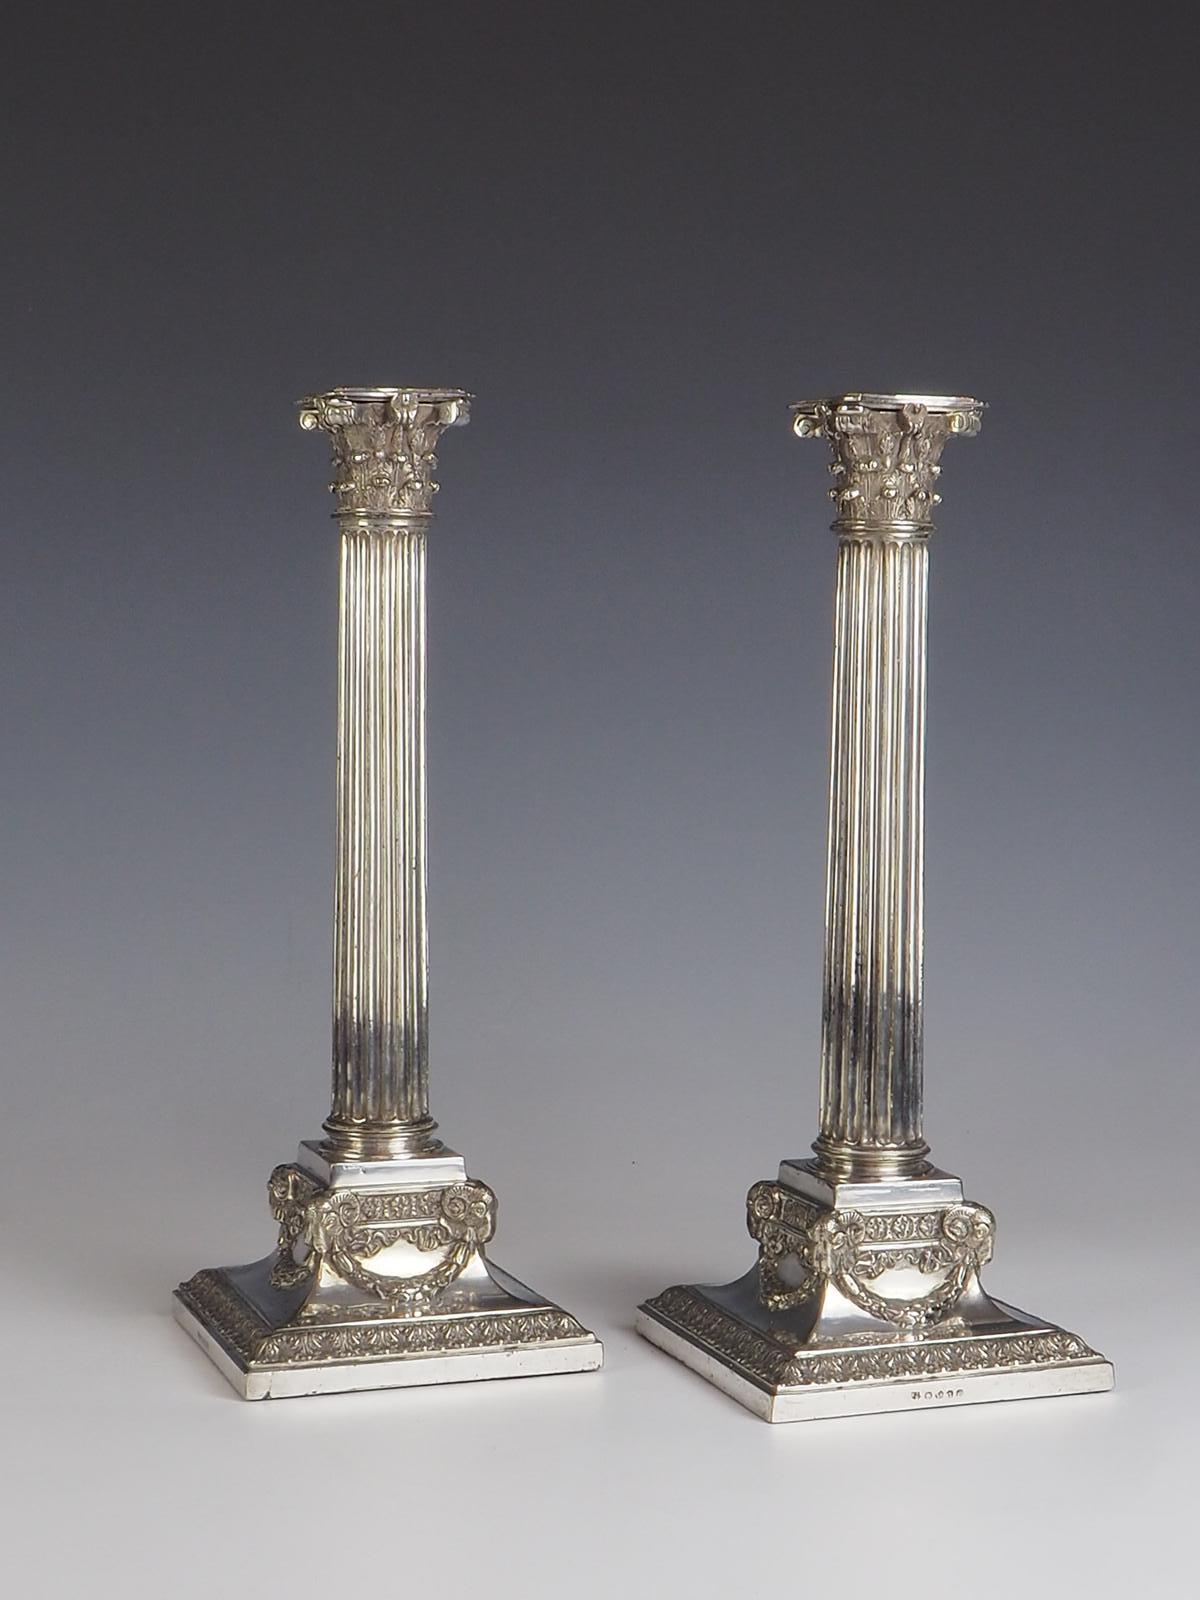 Laissez-vous séduire par l'élégance intemporelle de cette paire exquise de chandeliers en métal argenté de Martin Hall & Co, fabriqués vers 1890. Ces chandeliers témoignent du savoir-faire impeccable de l'époque et présentent des détails complexes